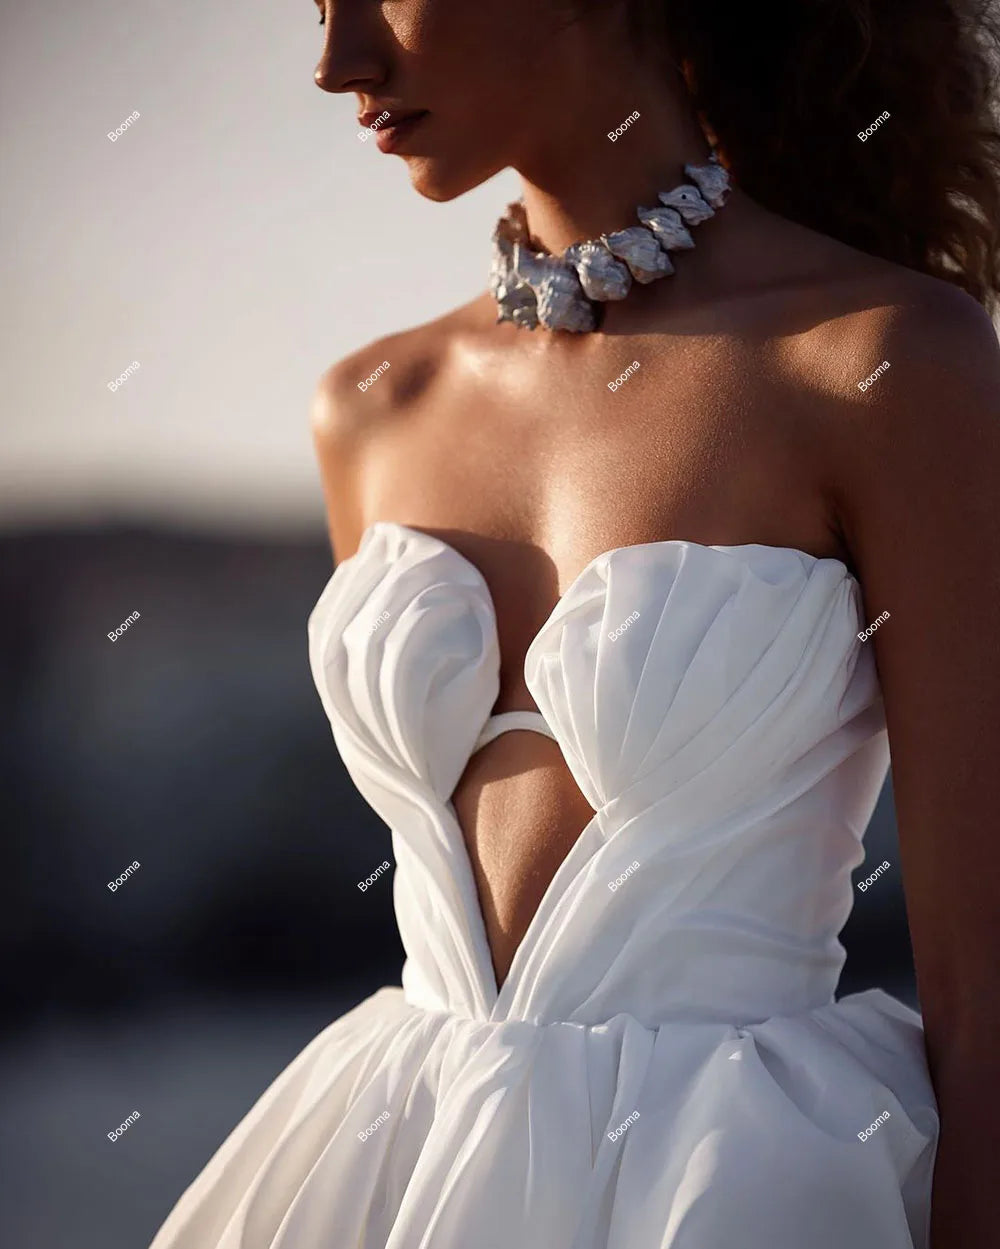 Semplici abiti da sposa corti semplici abiti da ballo senza spalline sirena abiti da sera per la sirena per abiti da cocktail da donna